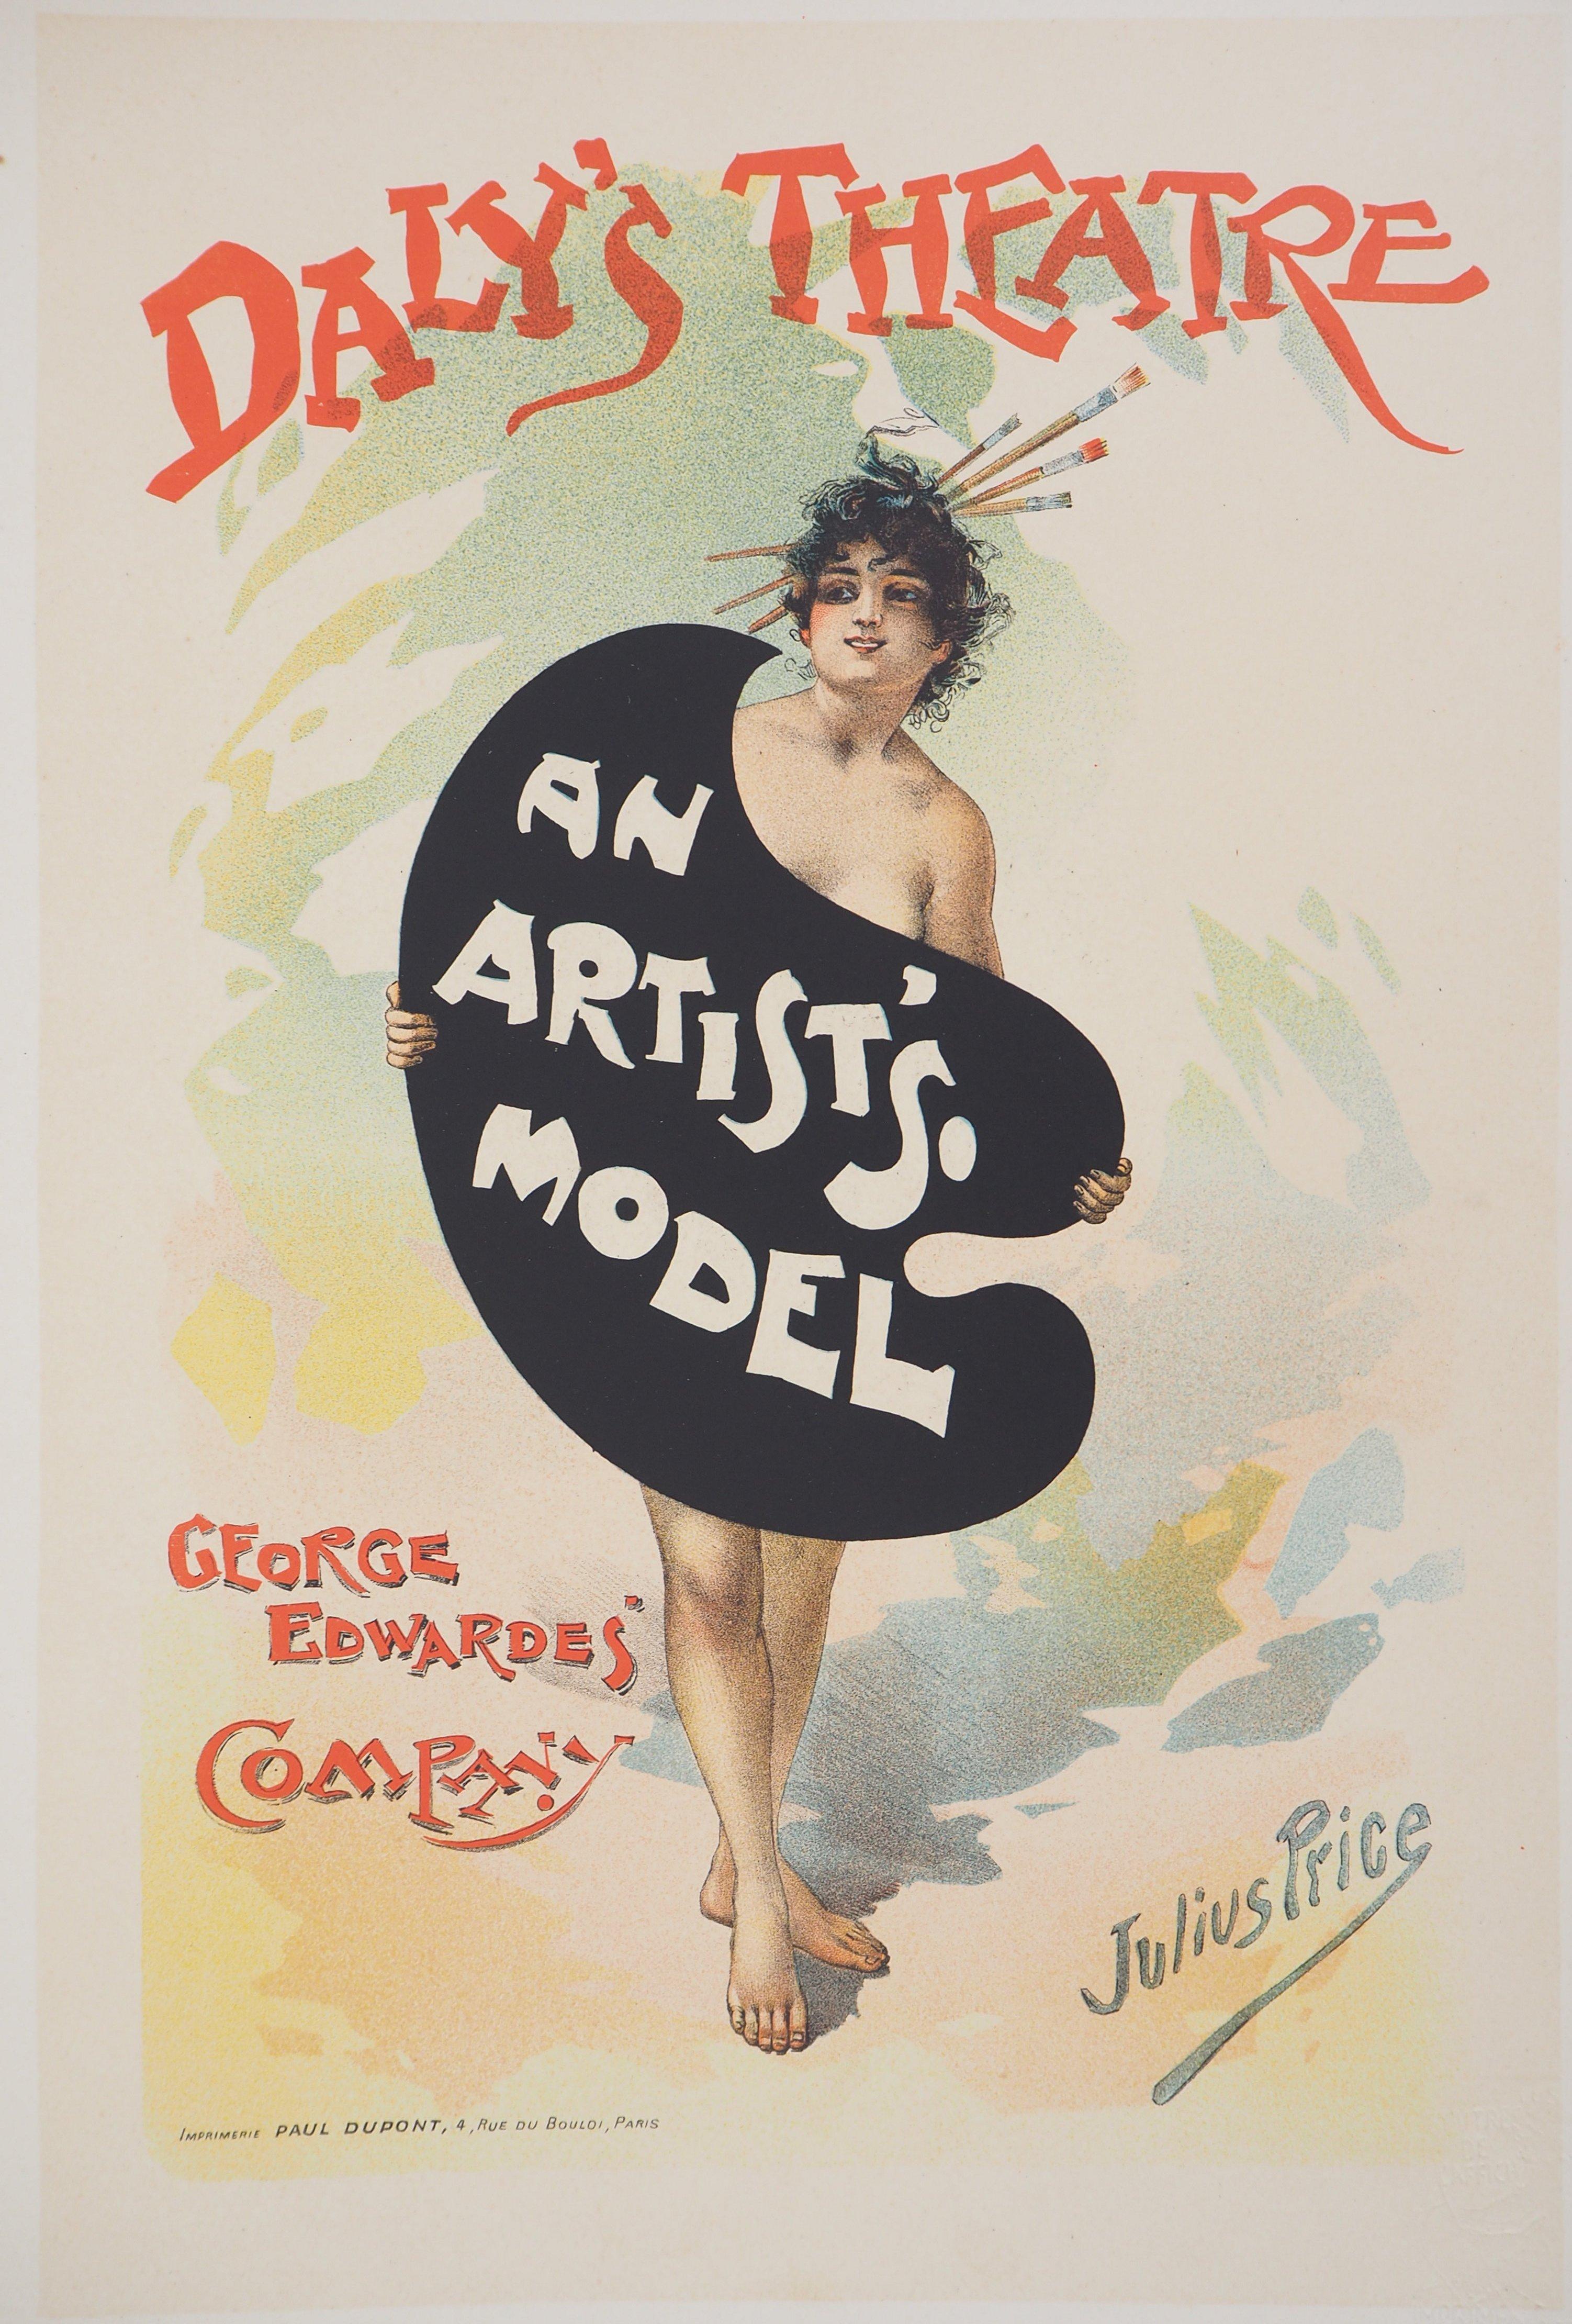 Julius Mendes Price Nude Print - An Artist's Model - Lithograph (Les Maîtres de l'Affiche), 1895